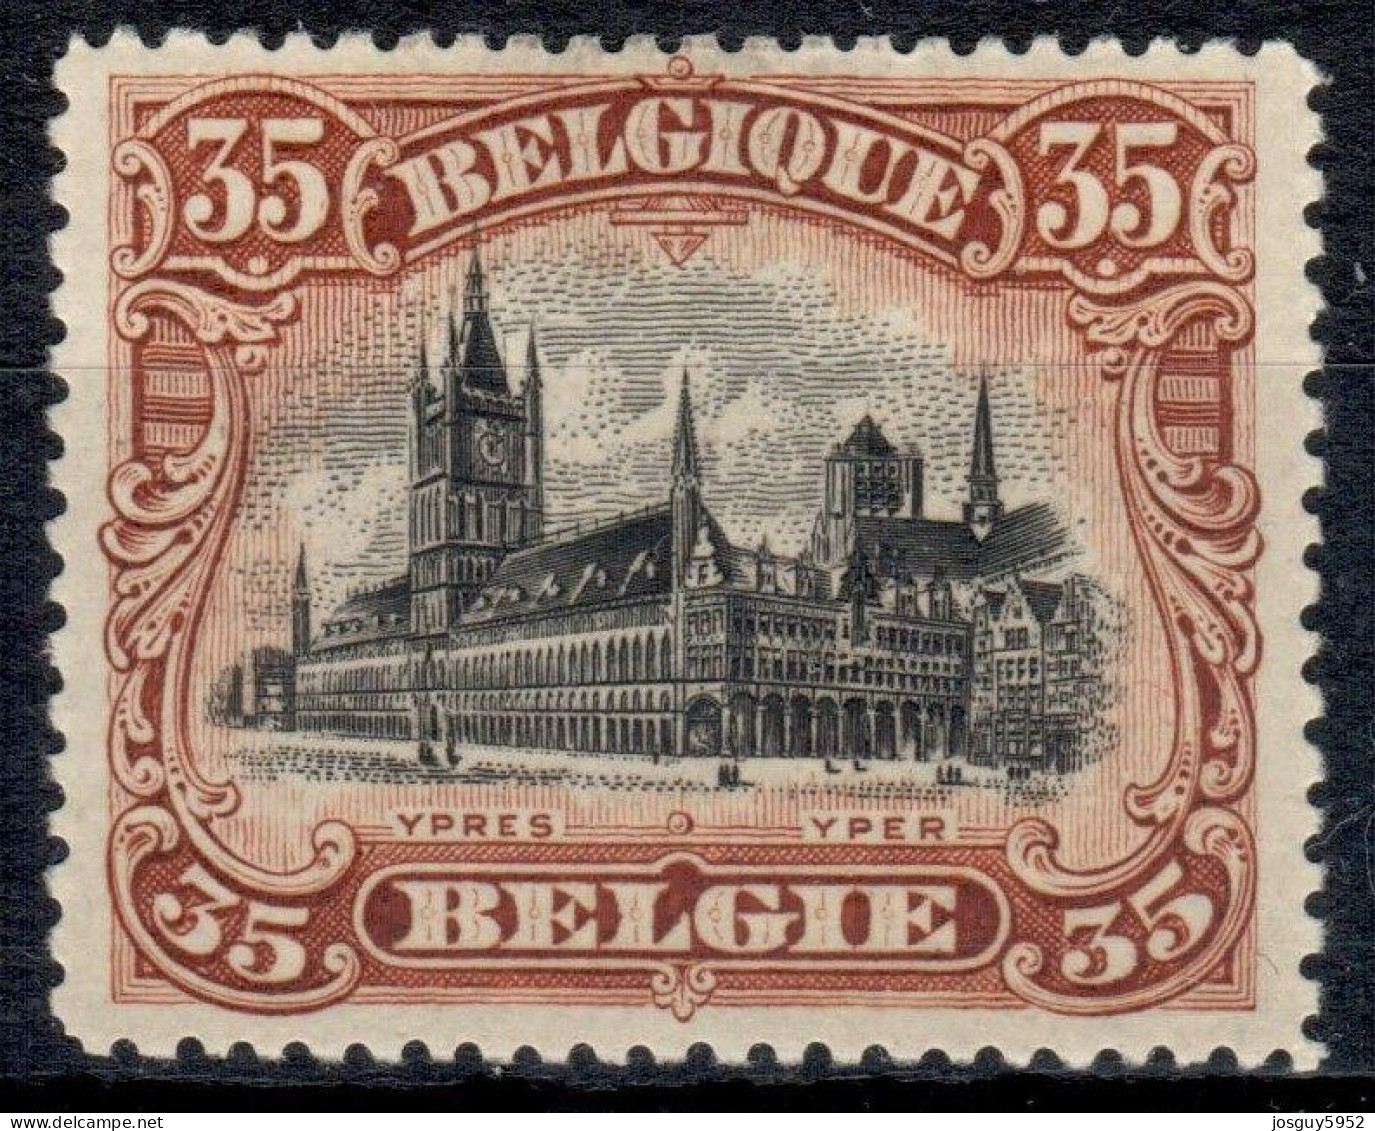 BELGIE 1915 - IEPER - DE HALLEN - N° 142 - MNH** - 1915-1920 Albert I